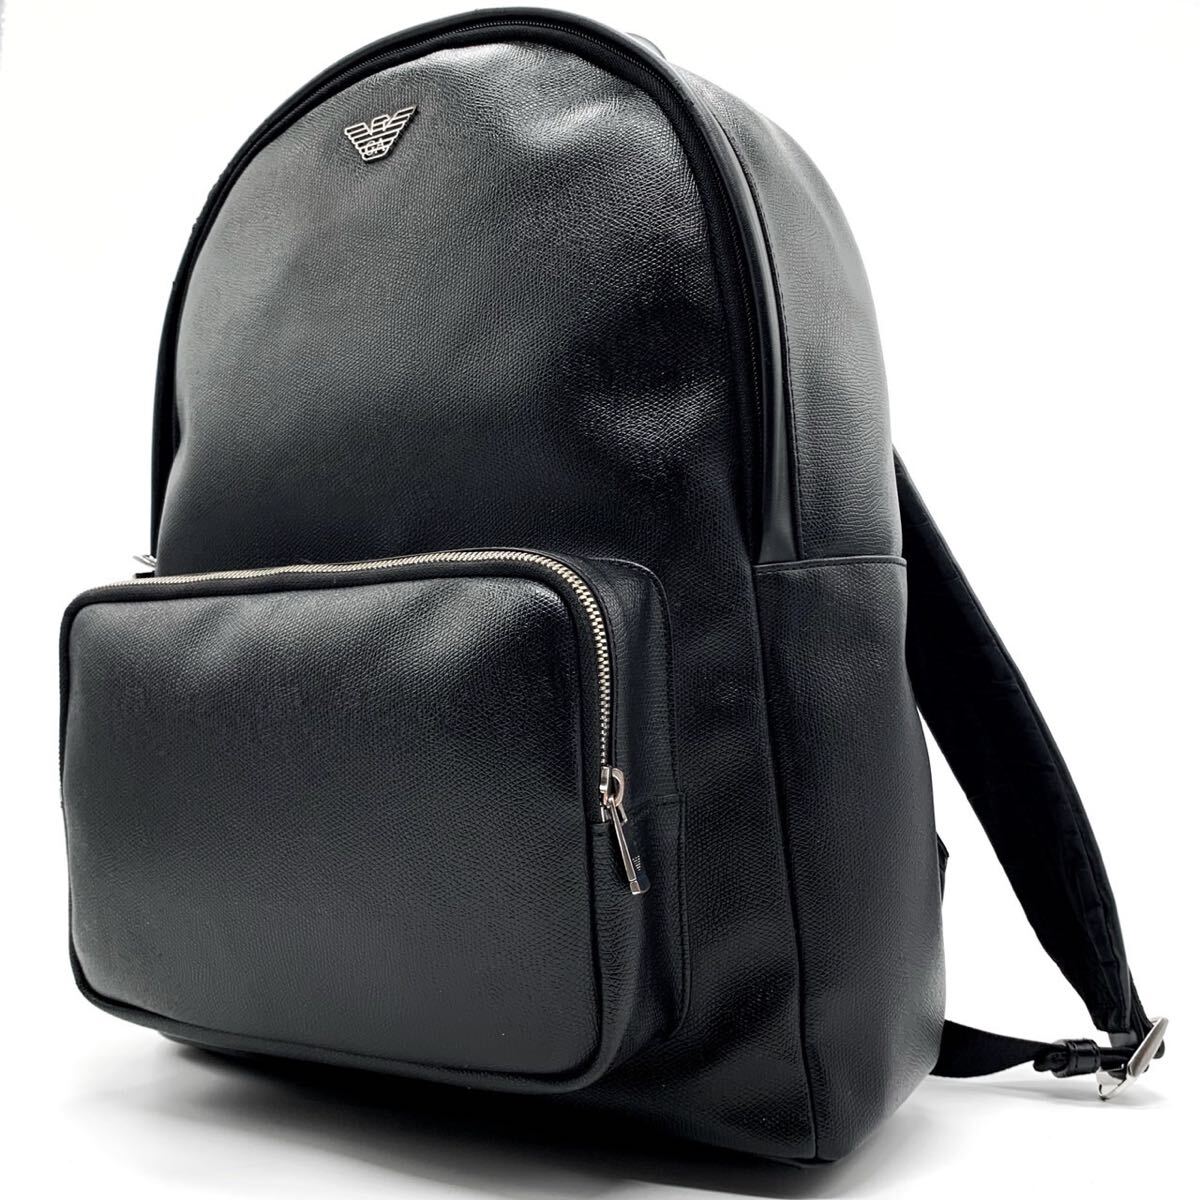 1 иен [ хорошая вещь ]EMPORIO ARMANI Emporio Armani рюкзак сумка упаковка серебряный металлические принадлежности все кожа A4 место хранения мужской черный чёрный цвет 